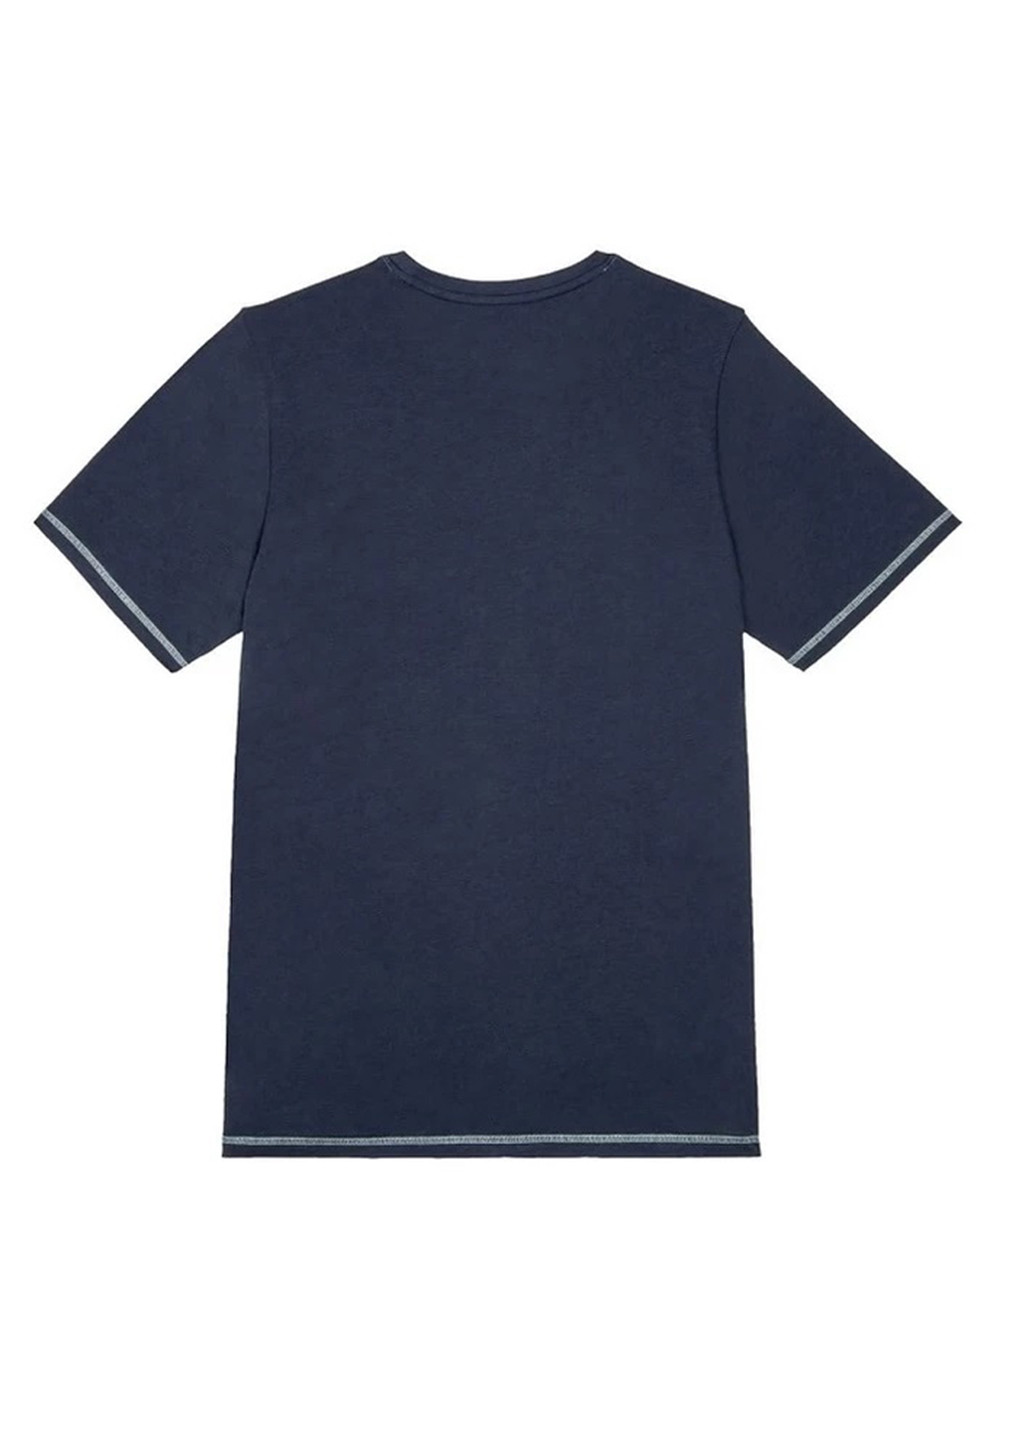 Піжама (футболка, шорти) Livergy футболка + шорти напис комбінована домашня трикотаж, модал, бавовна